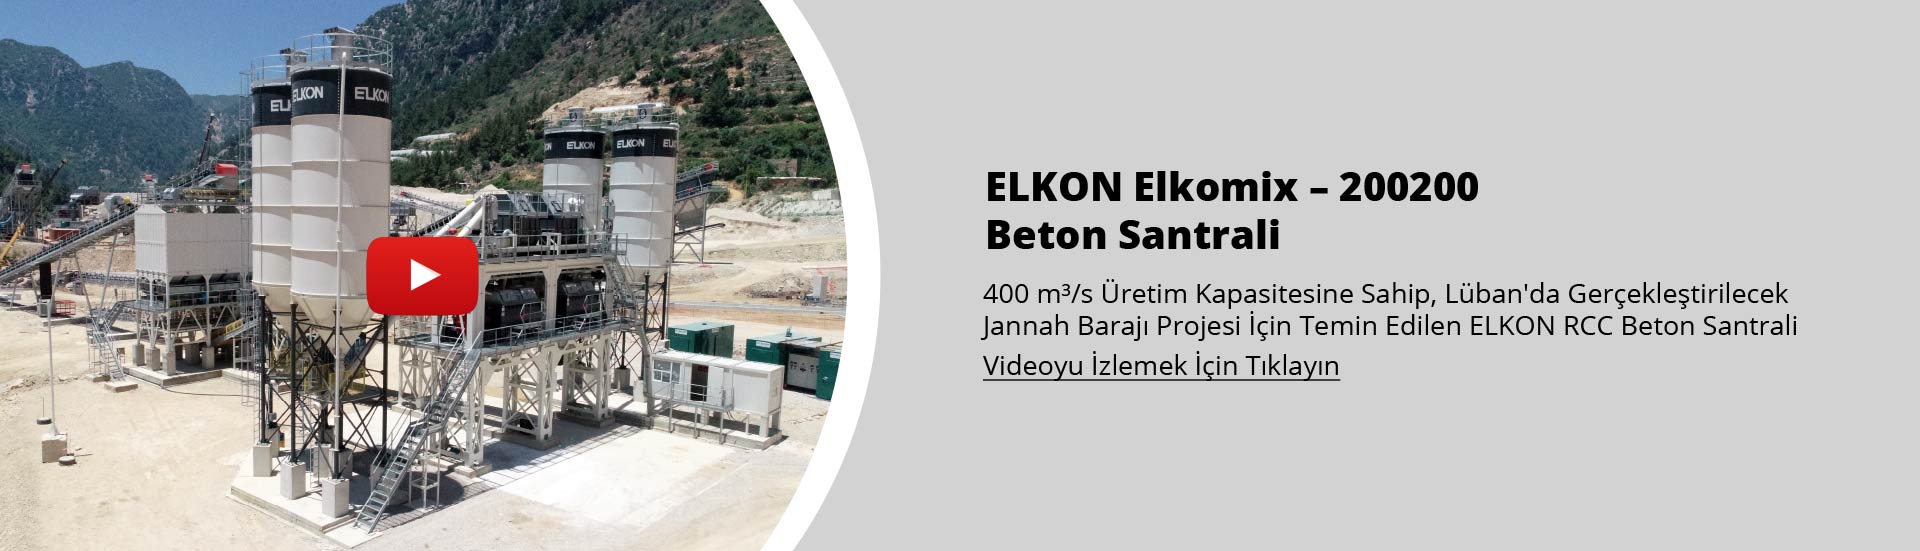 Lübnan’da Yapılacak Cennet Barajı İçin 400 m³/s Kapasiteli ELKON Beton Santrali